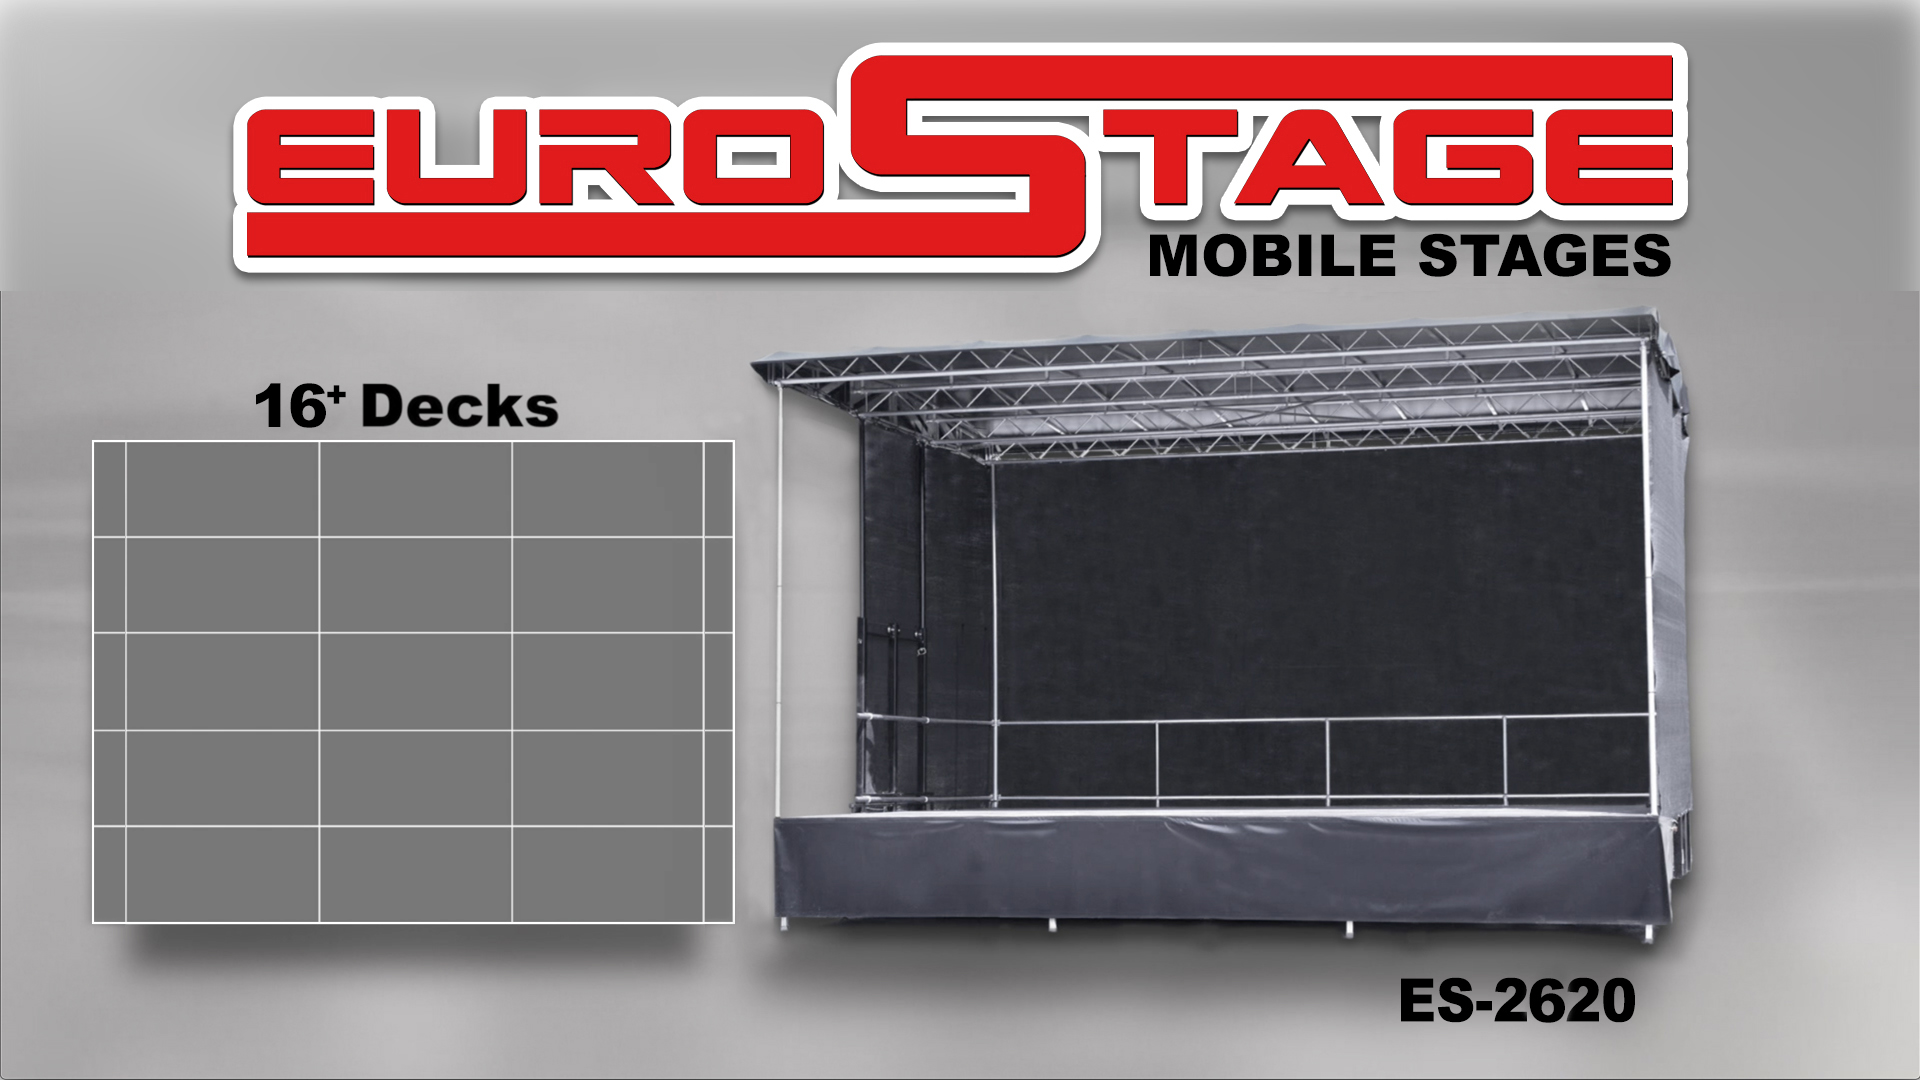 EuroStage ES-2620 Mobile Stage